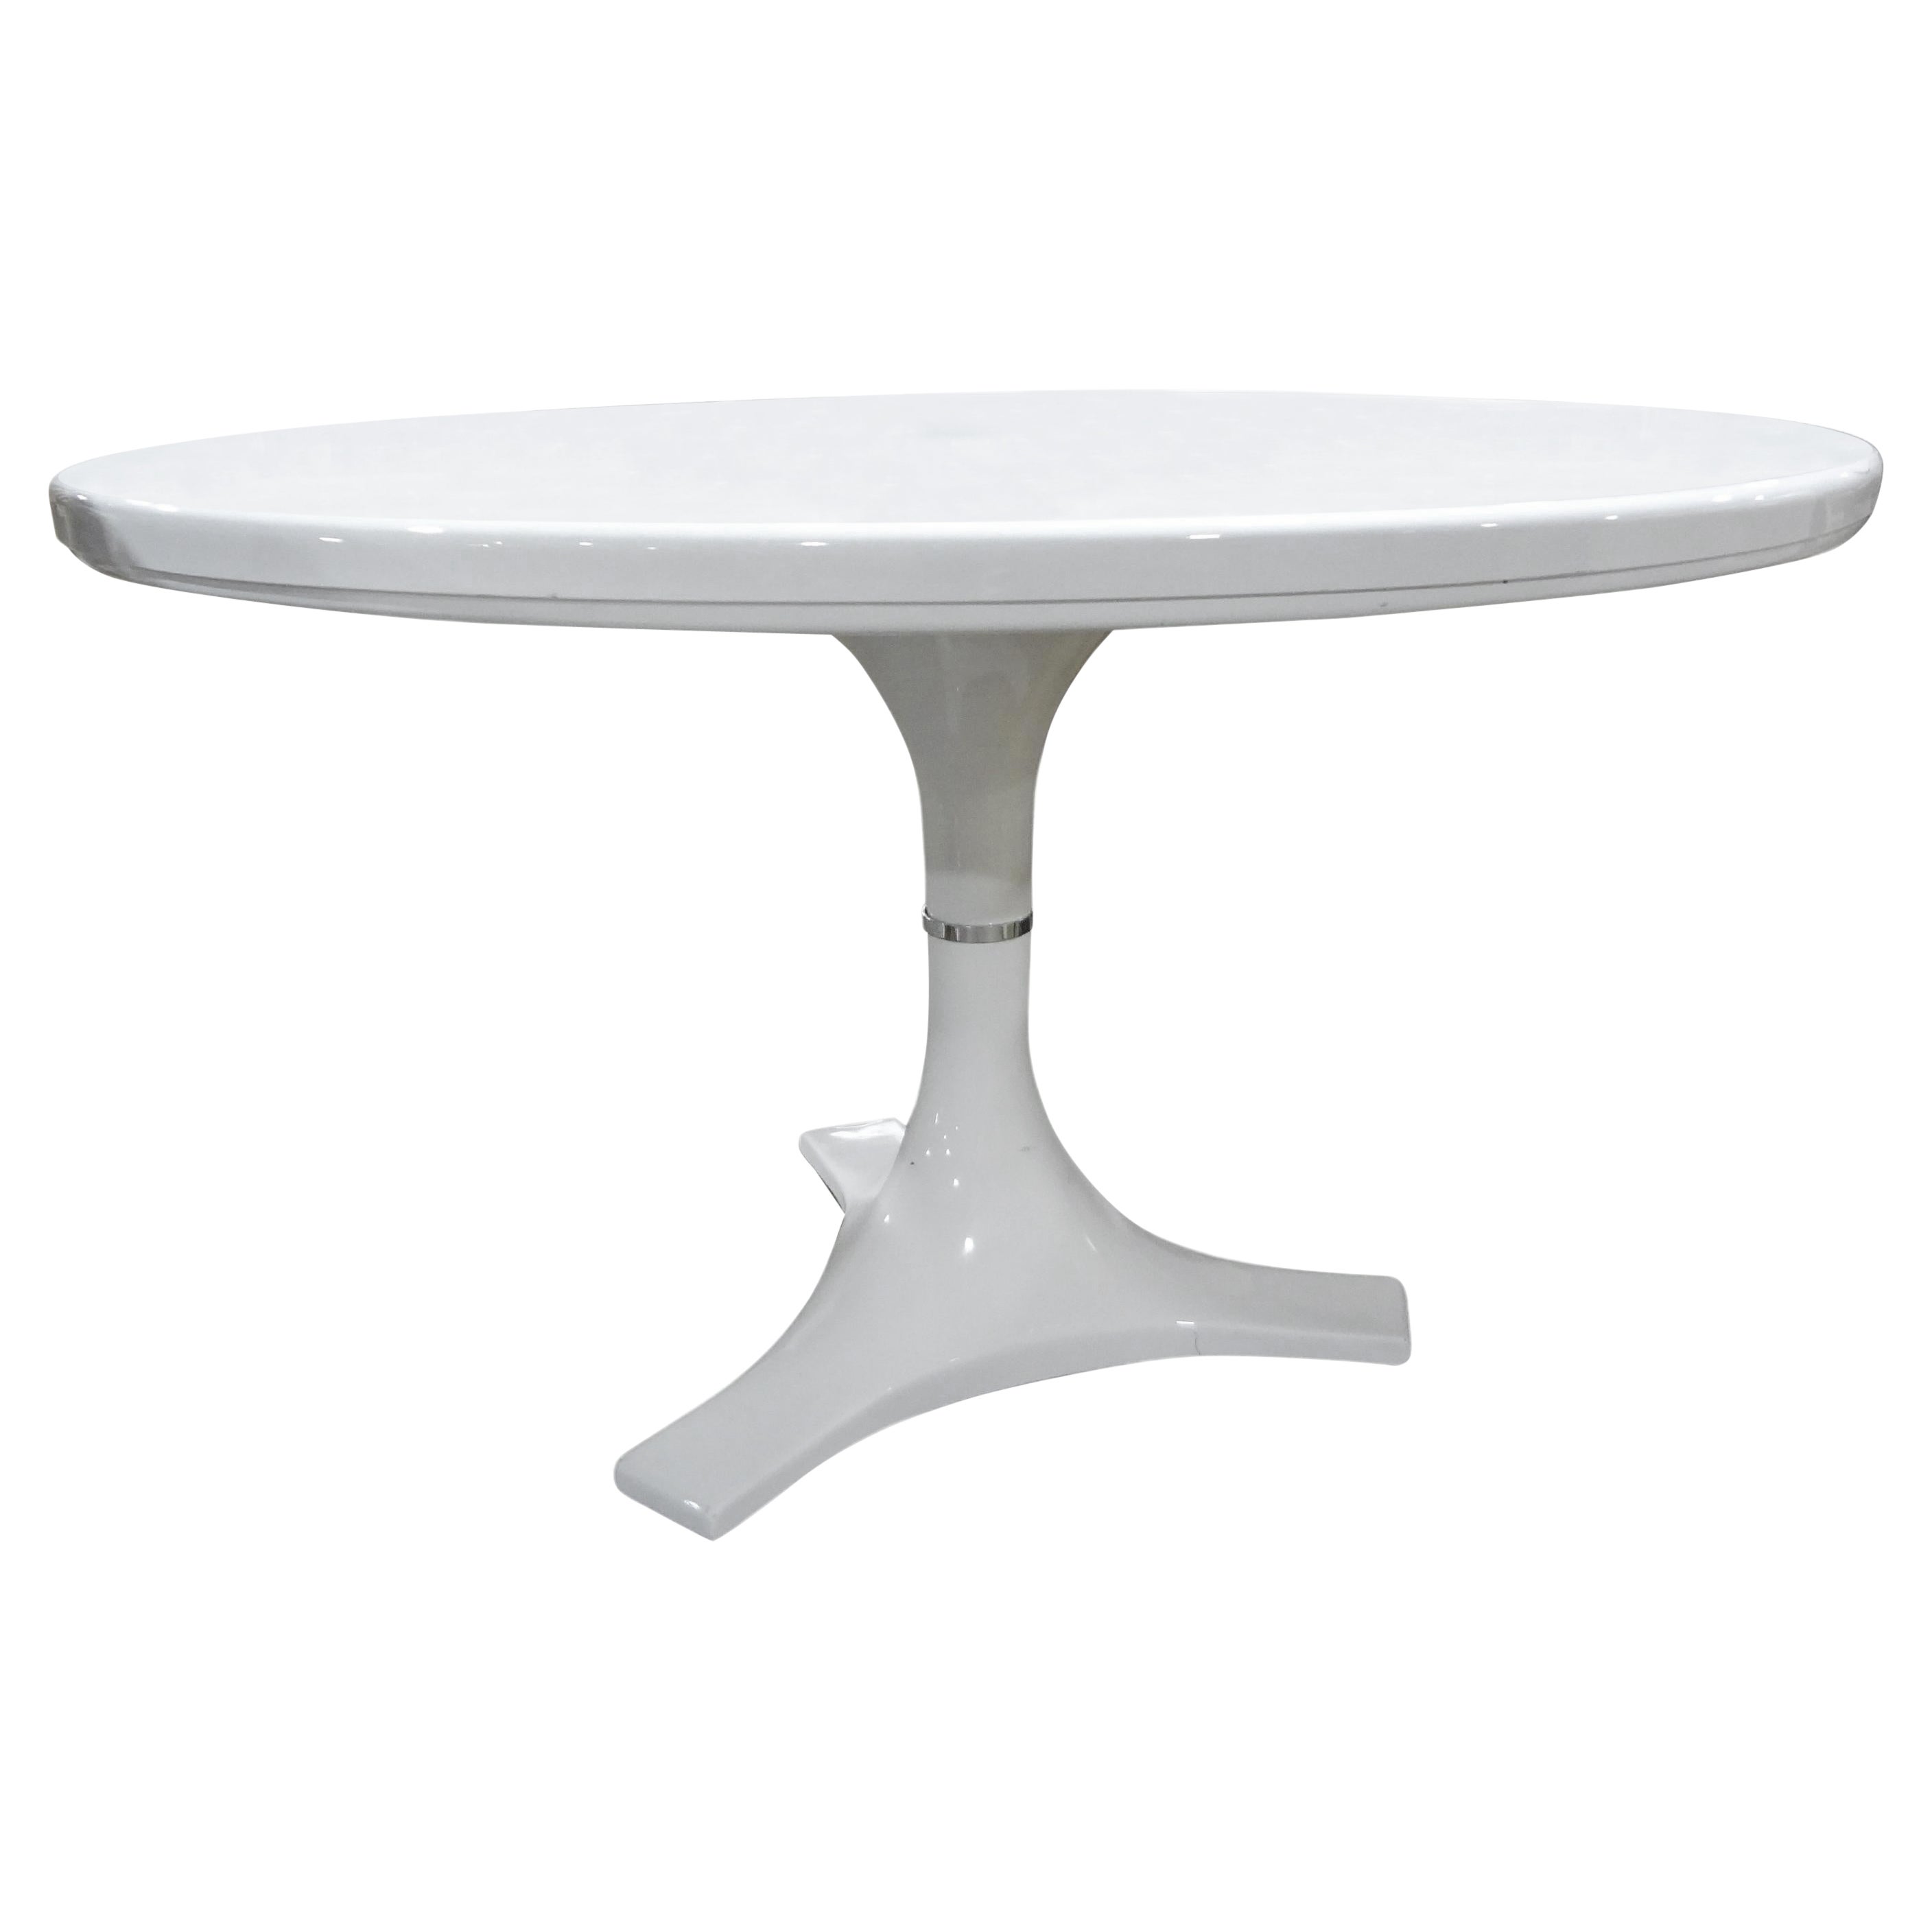 Italian Modern Table By A. Castelli Ferrieri & Ignazio Gardella For Kartell